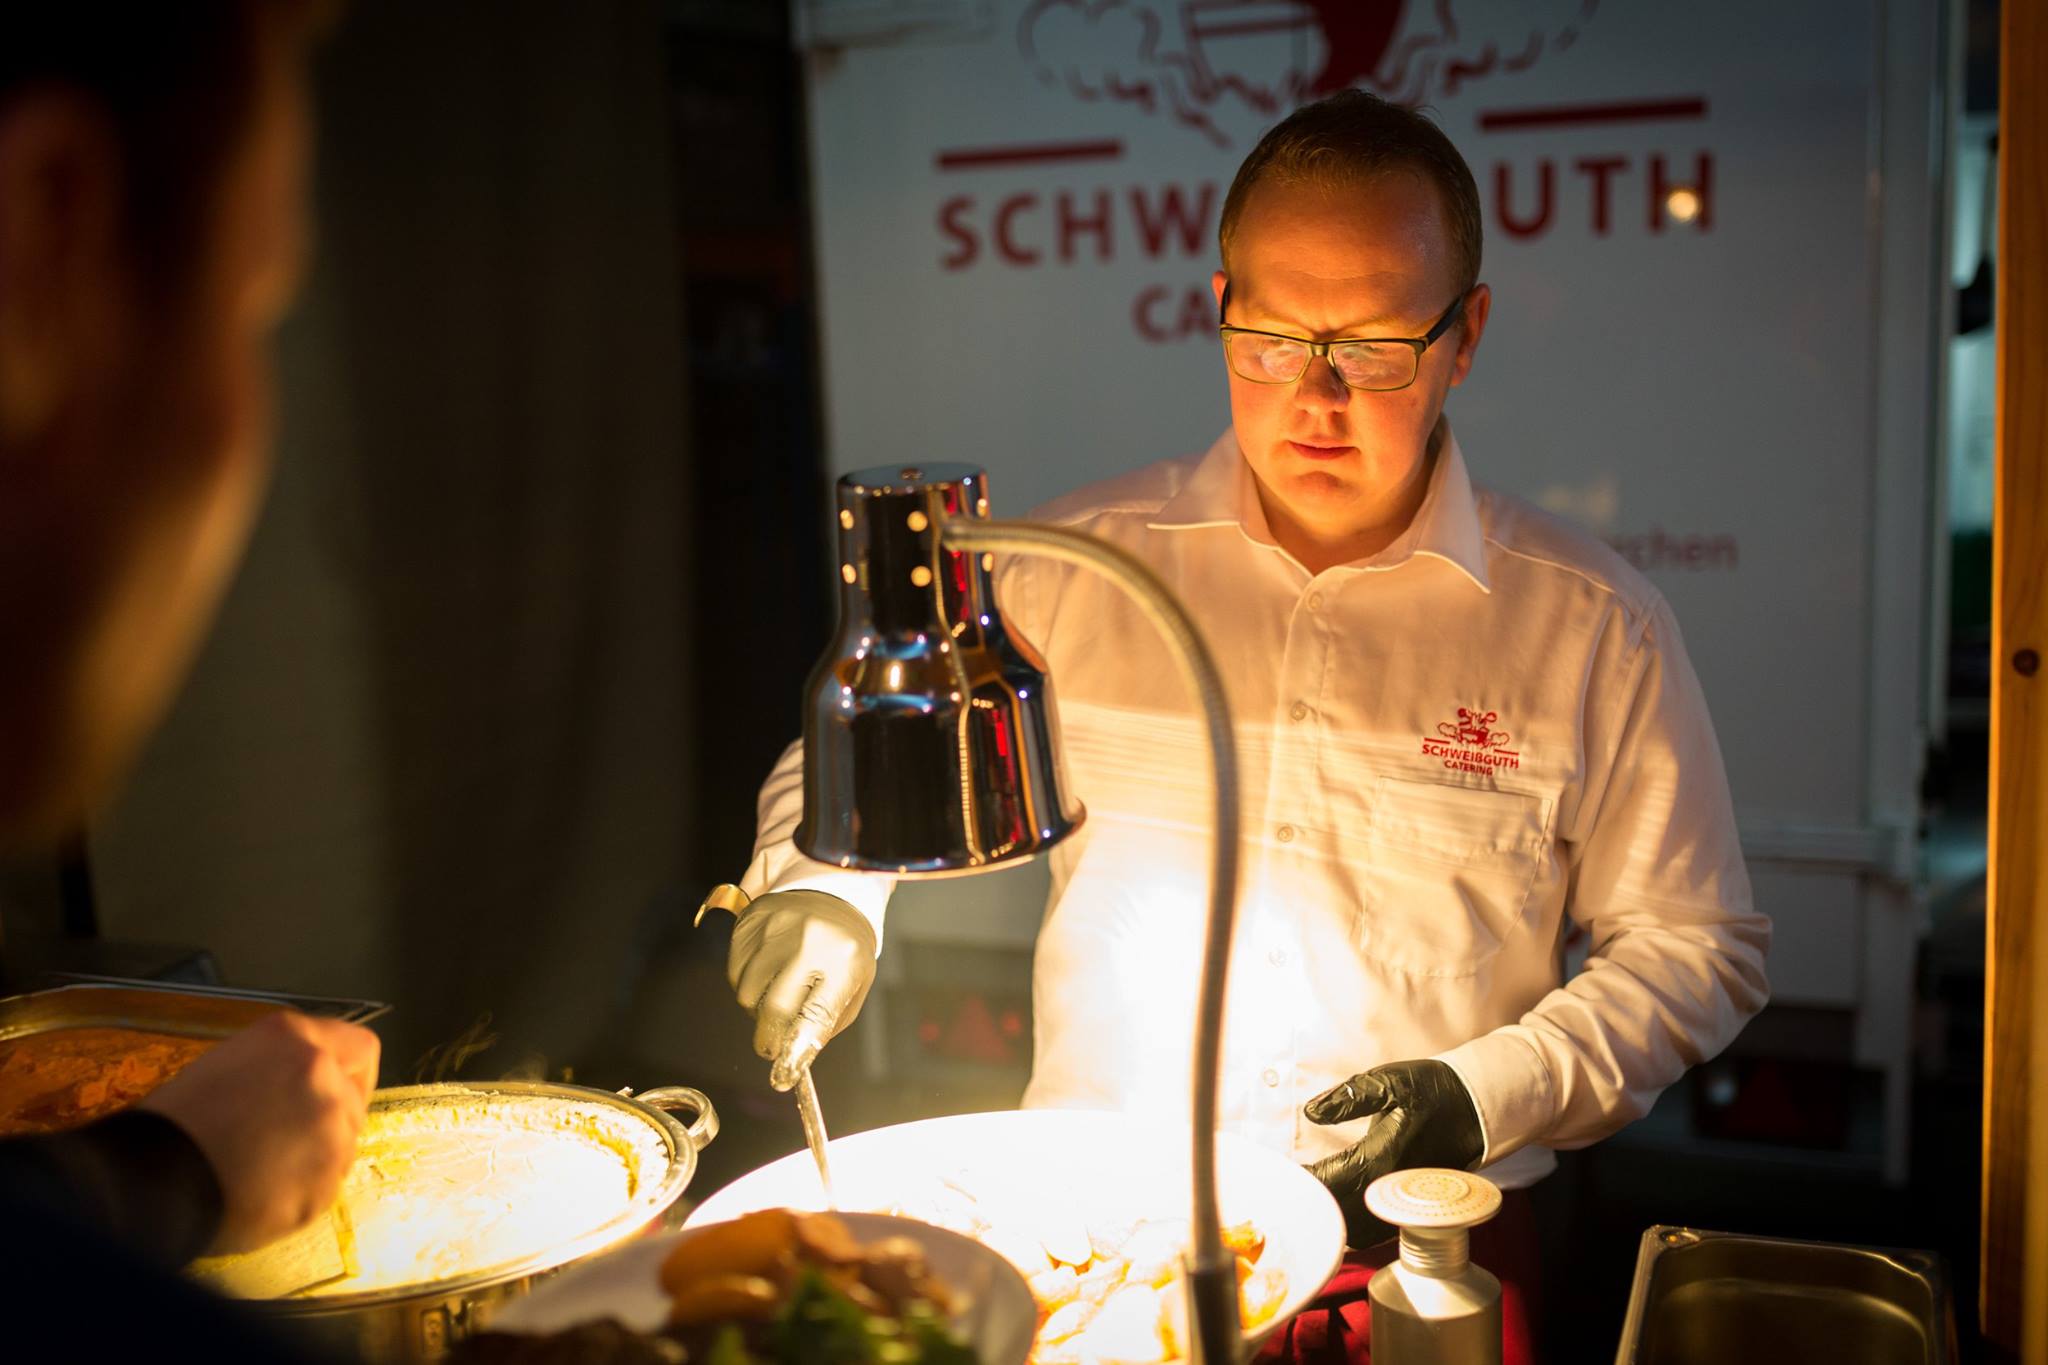 Geschichte der Schweißguth Catering GmbH